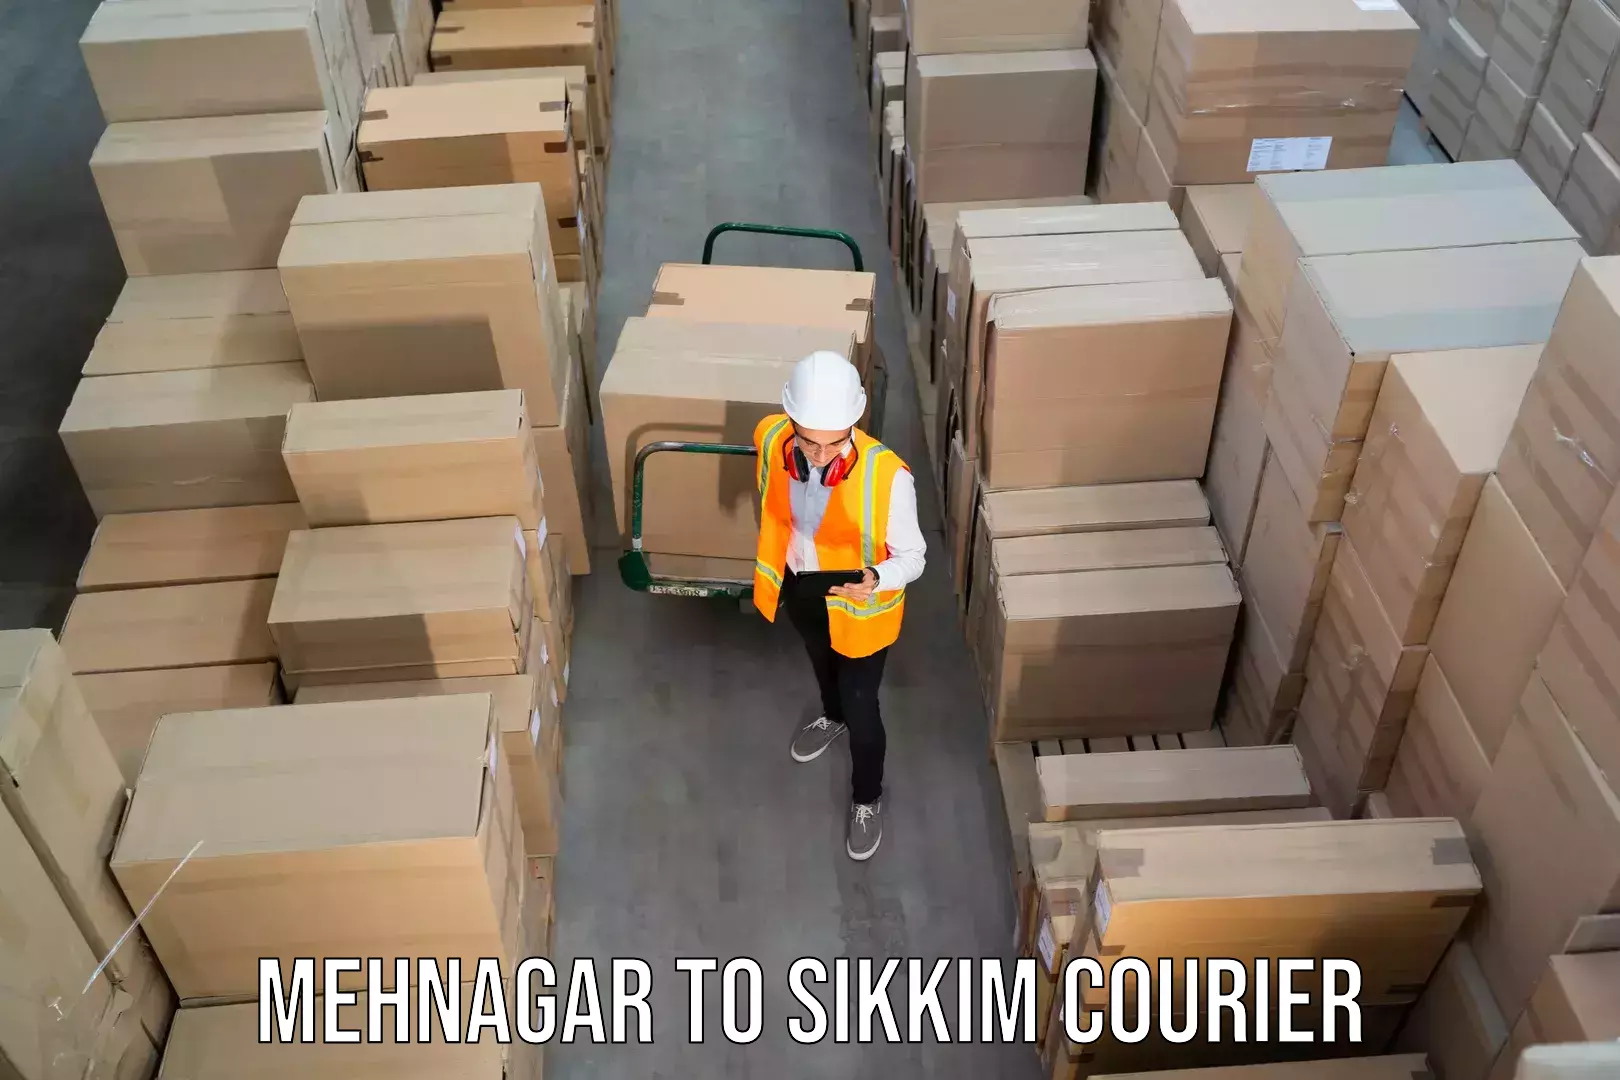 Premium courier services Mehnagar to North Sikkim